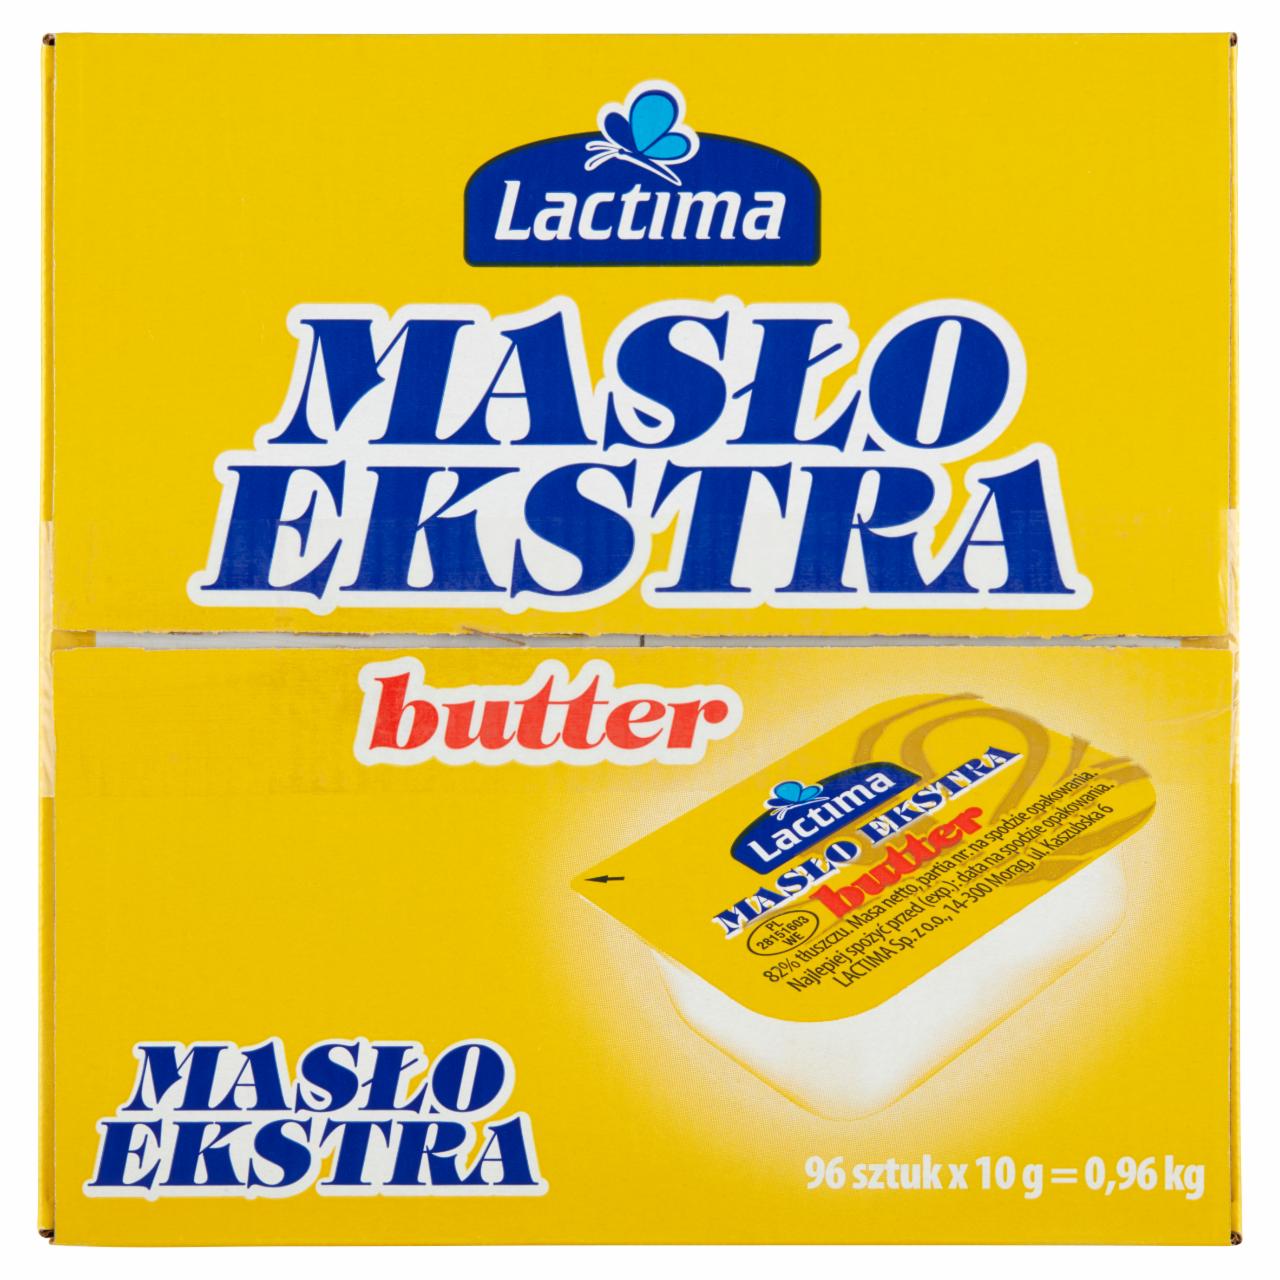 Zdjęcia - Lactima Masło ekstra 0,96 kg (96 x 10 g)